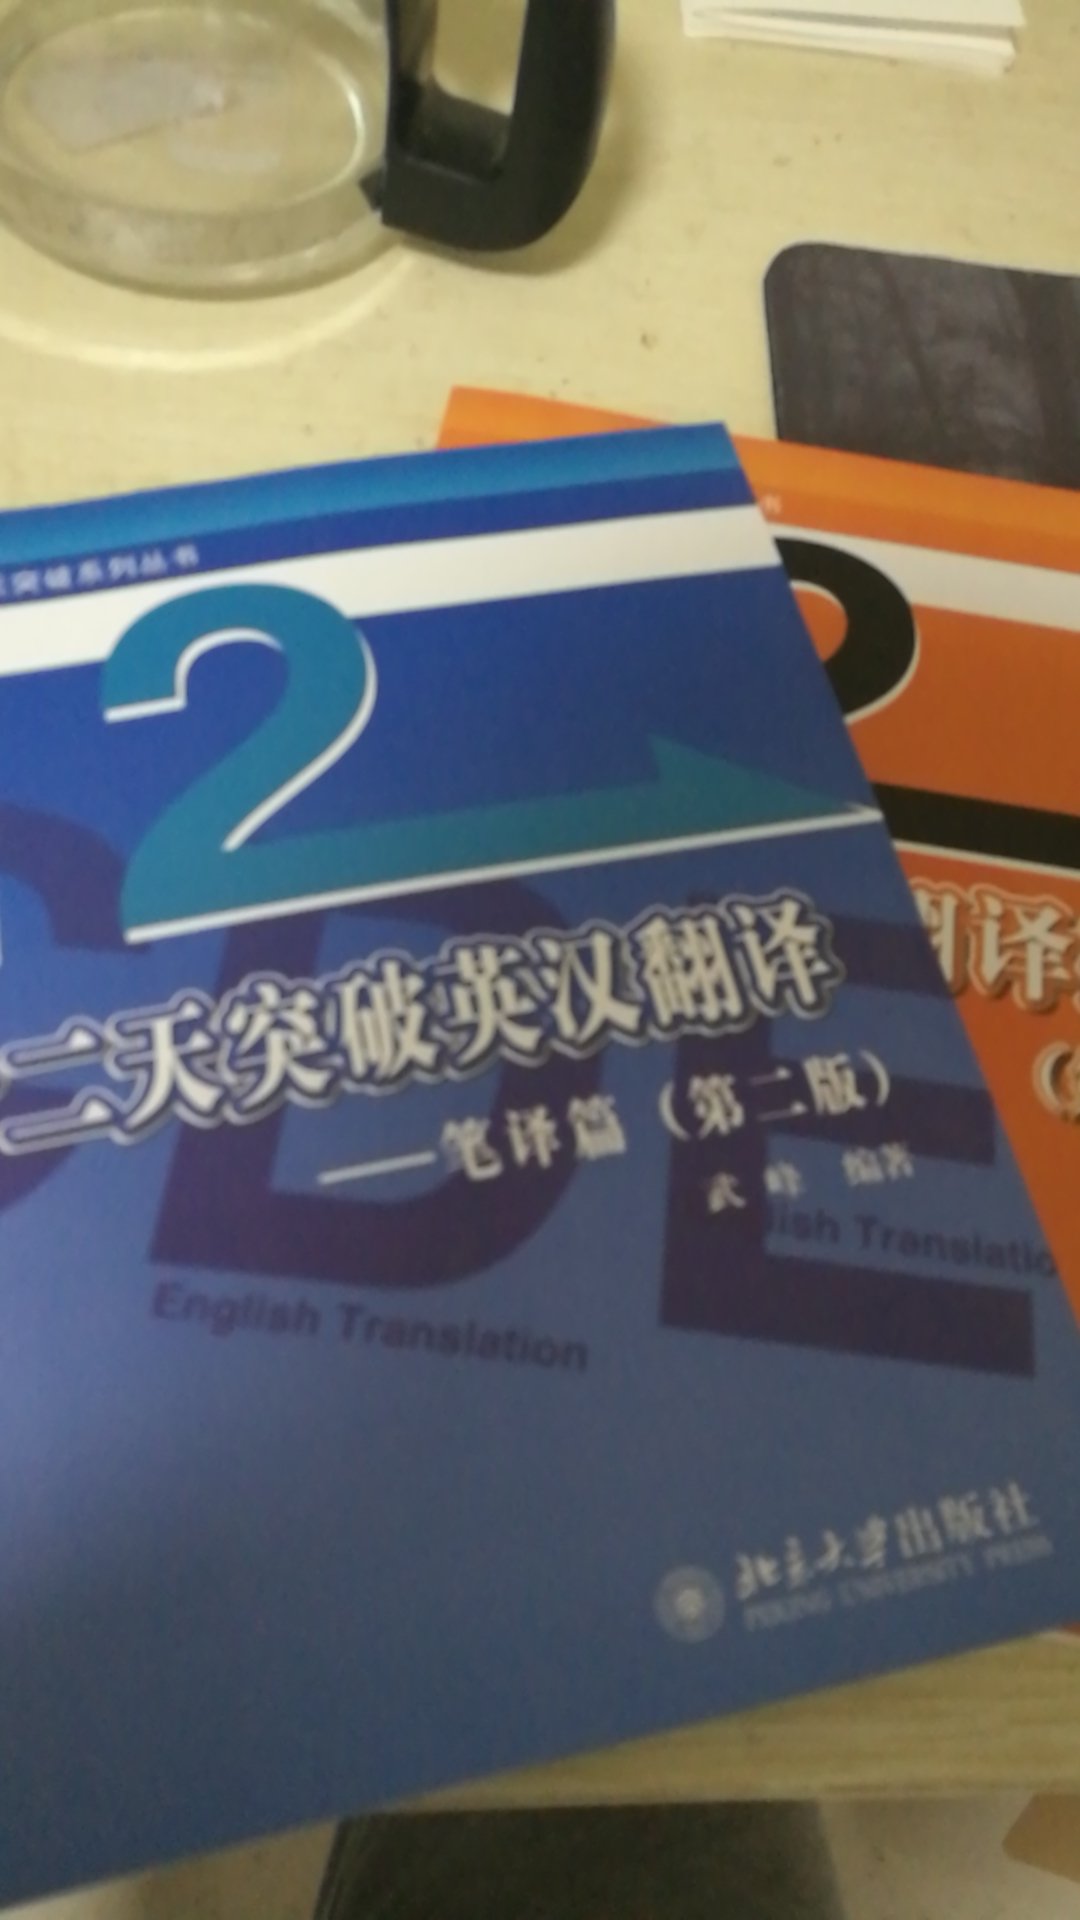 十二天突破英汉翻译笔译版，翻译类教程中算挺好的。物流很给力，态度也很好。